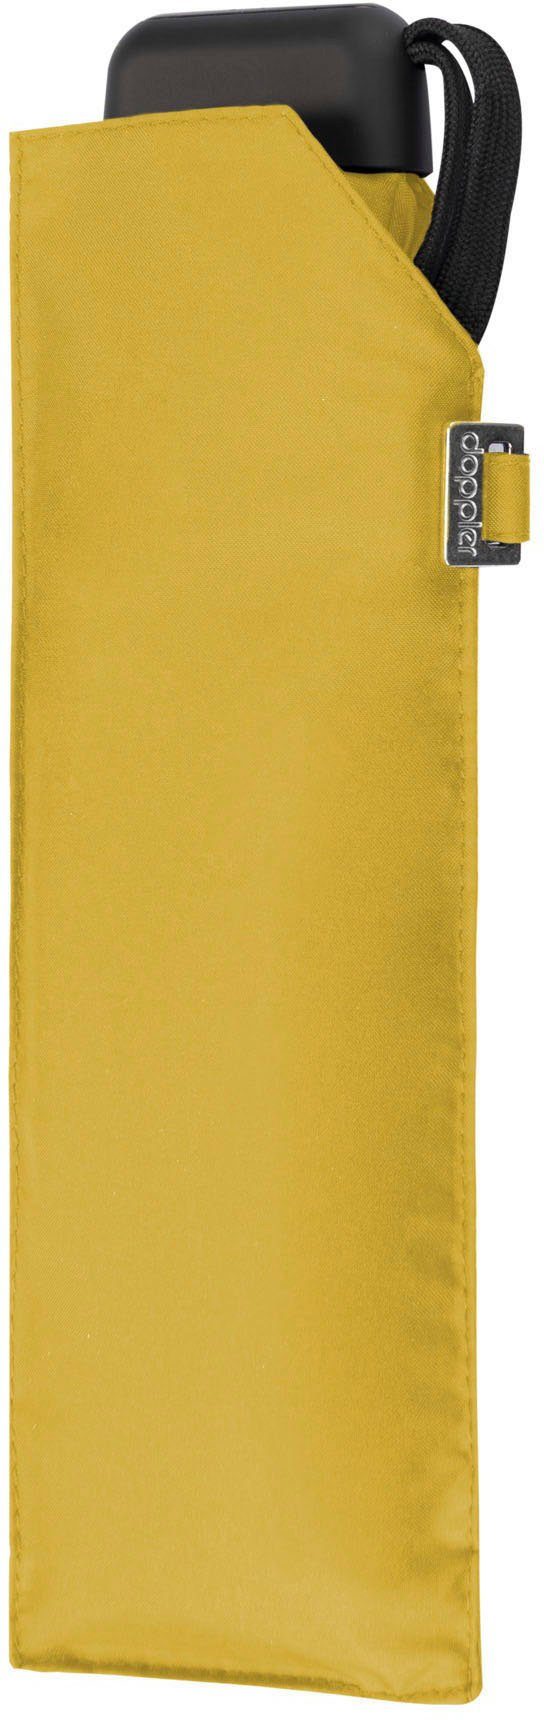 Carbonsteel shiny yellow uni, Taschenregenschirm doppler® Slim